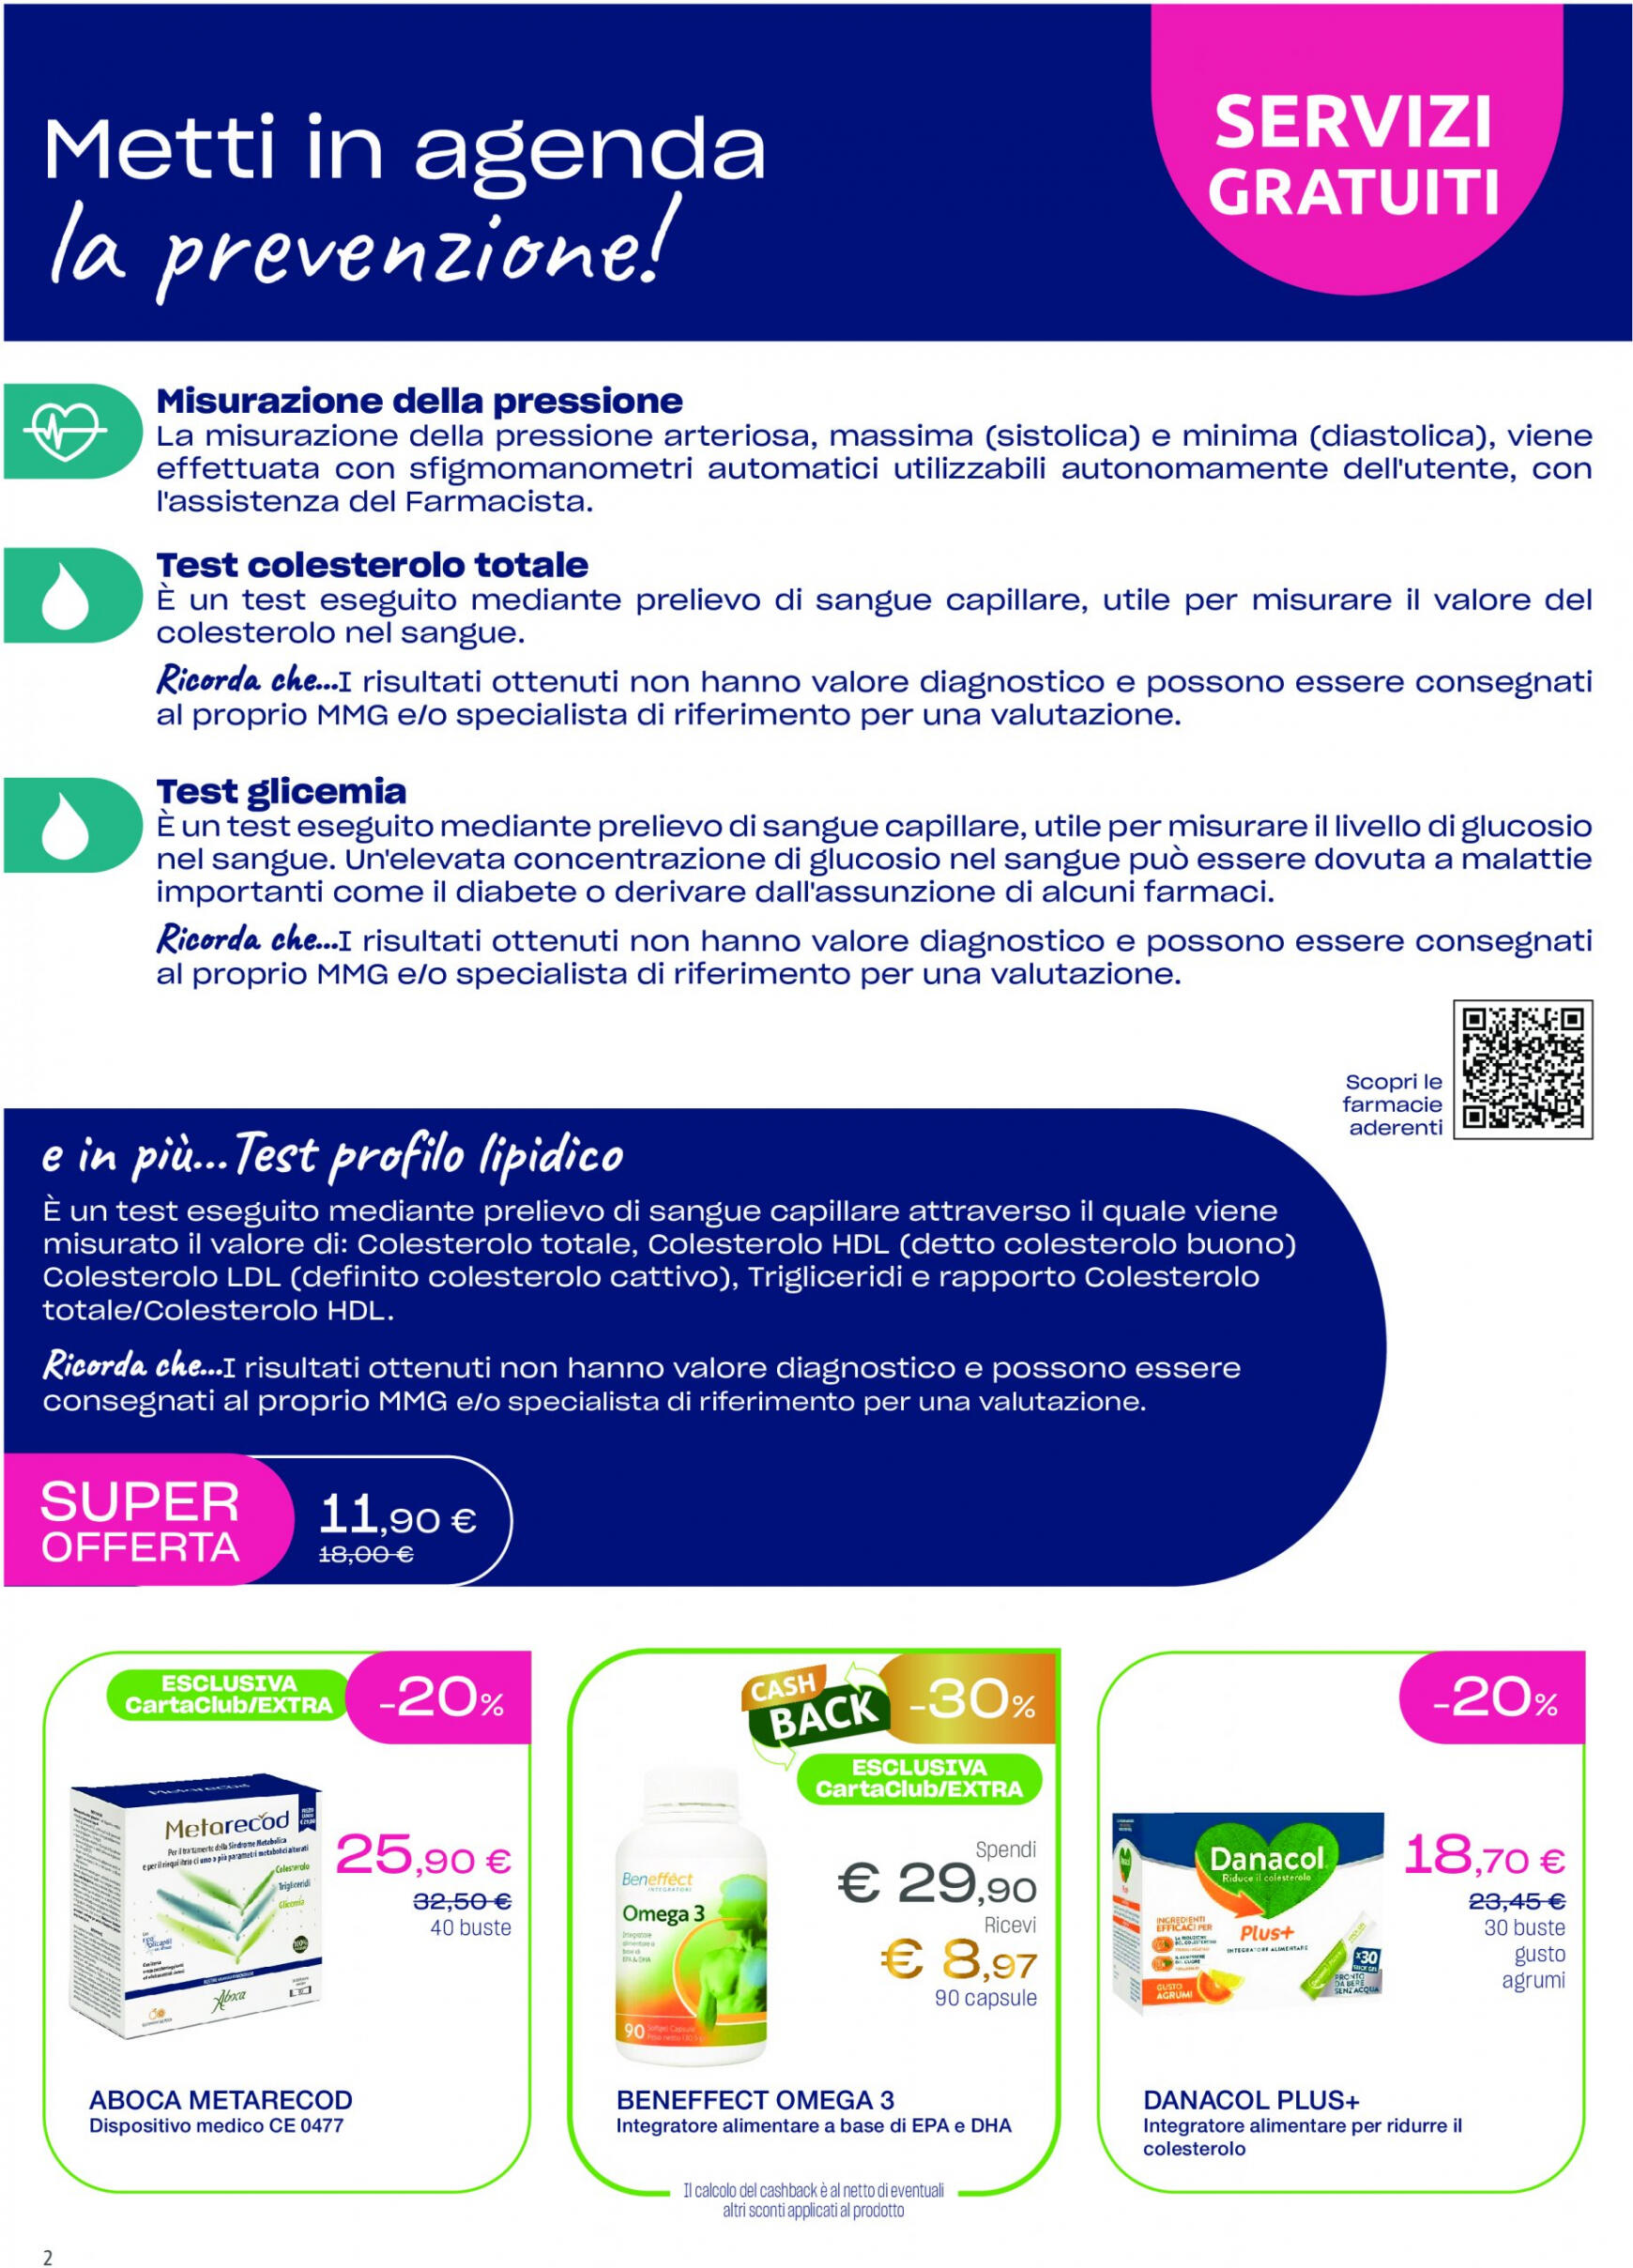 lloyds-farmacia - Nuovo volantino Lloyds Farmacia - Ad aprile metti in agenda la prevenzione! 27.03. - 01.05. - page: 2